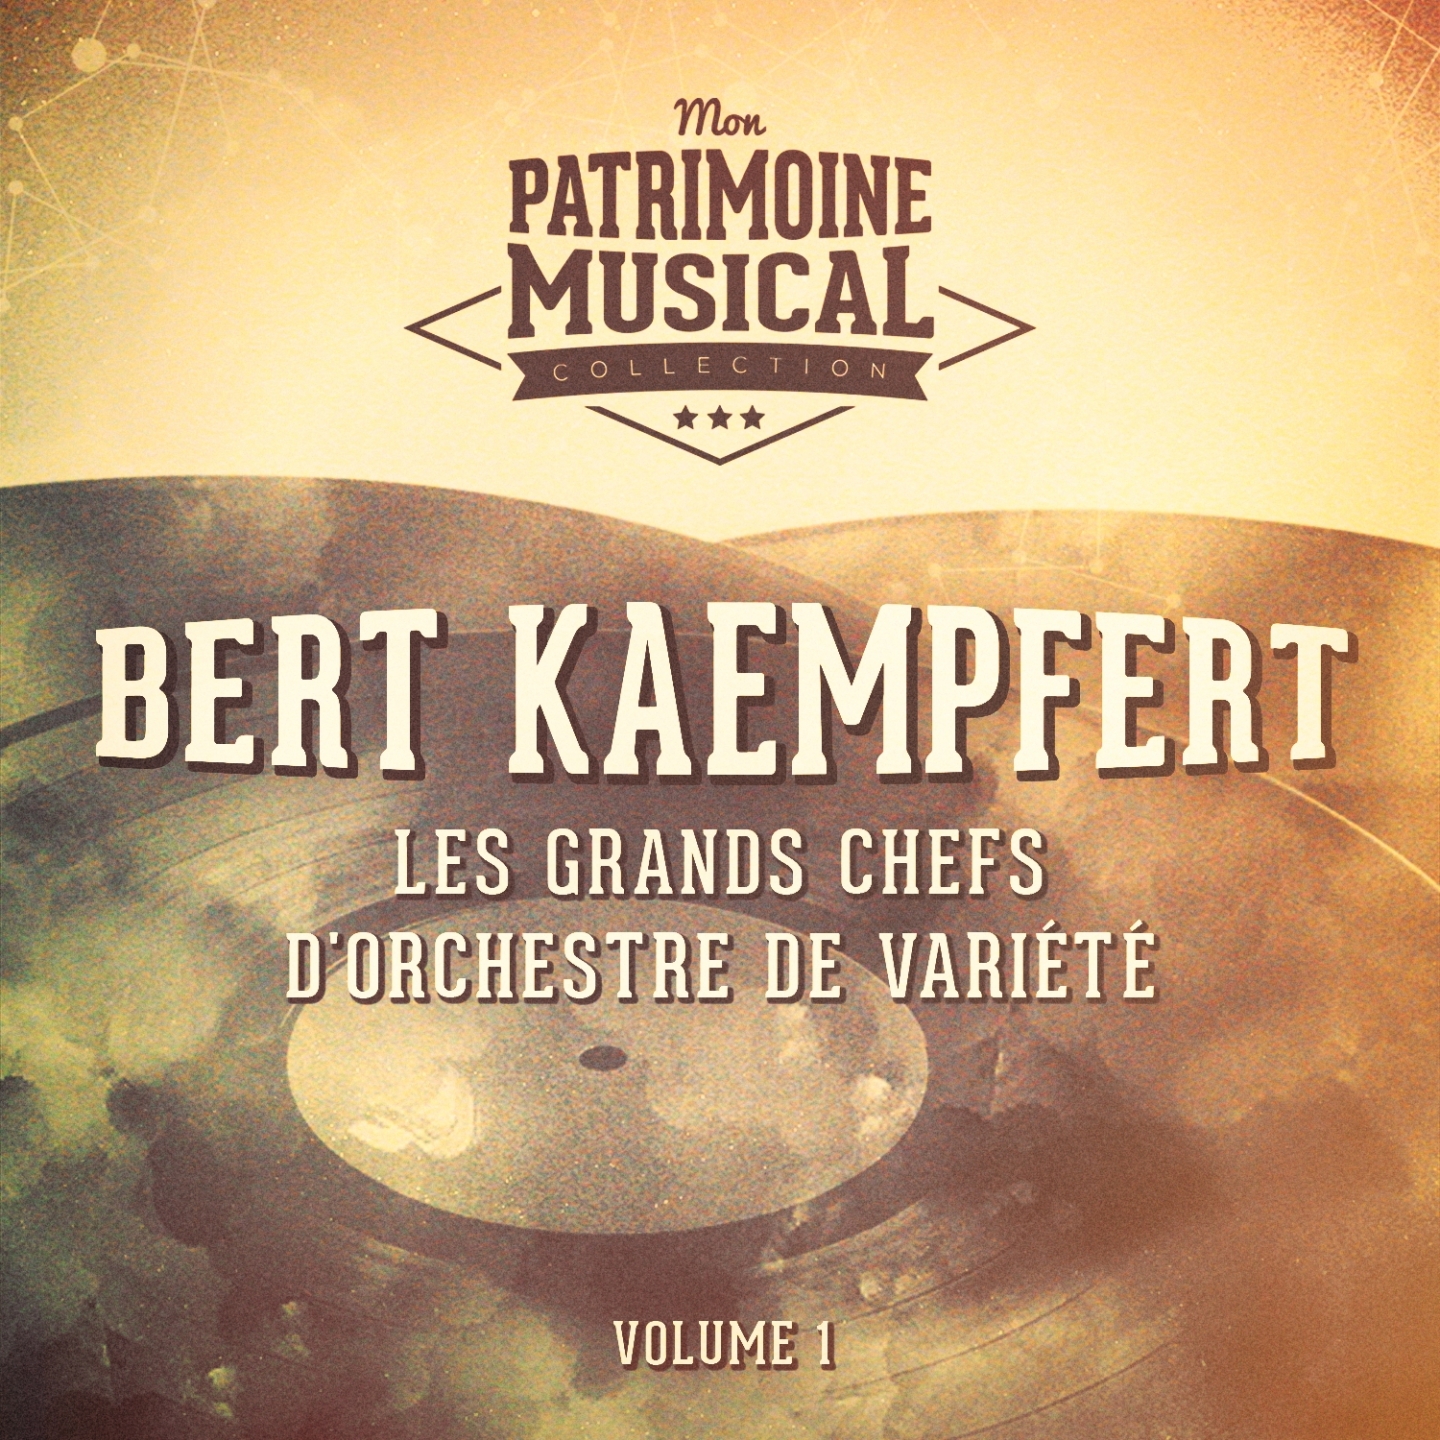 Les grands chefs d' orchestre de varie te : Bert Kaempfert, Vol. 1